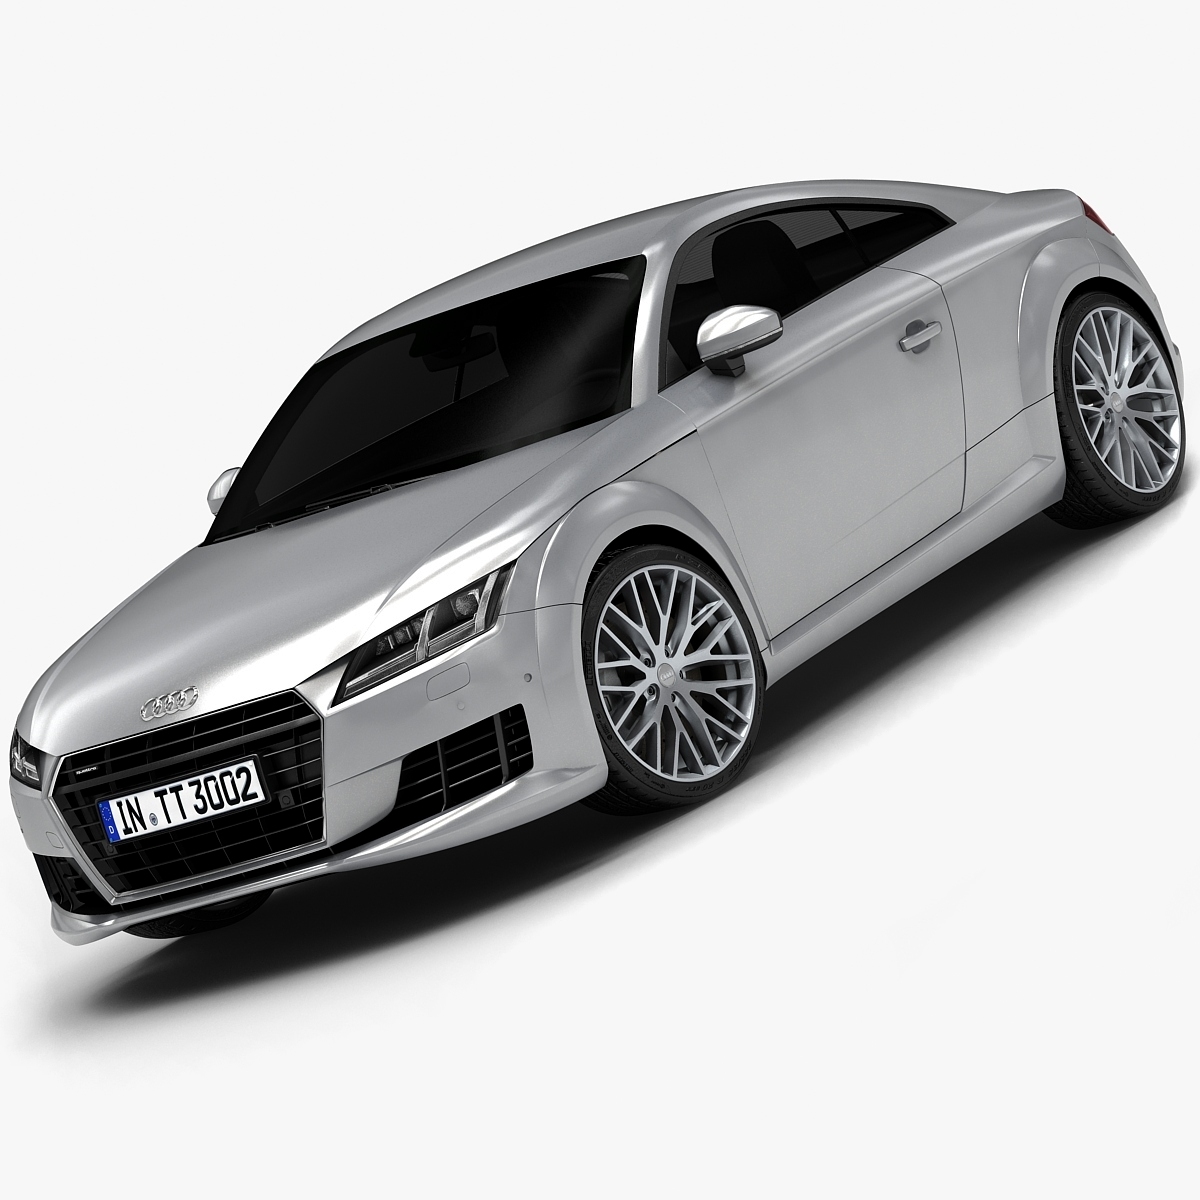 2015 Audi Tt Low Interior